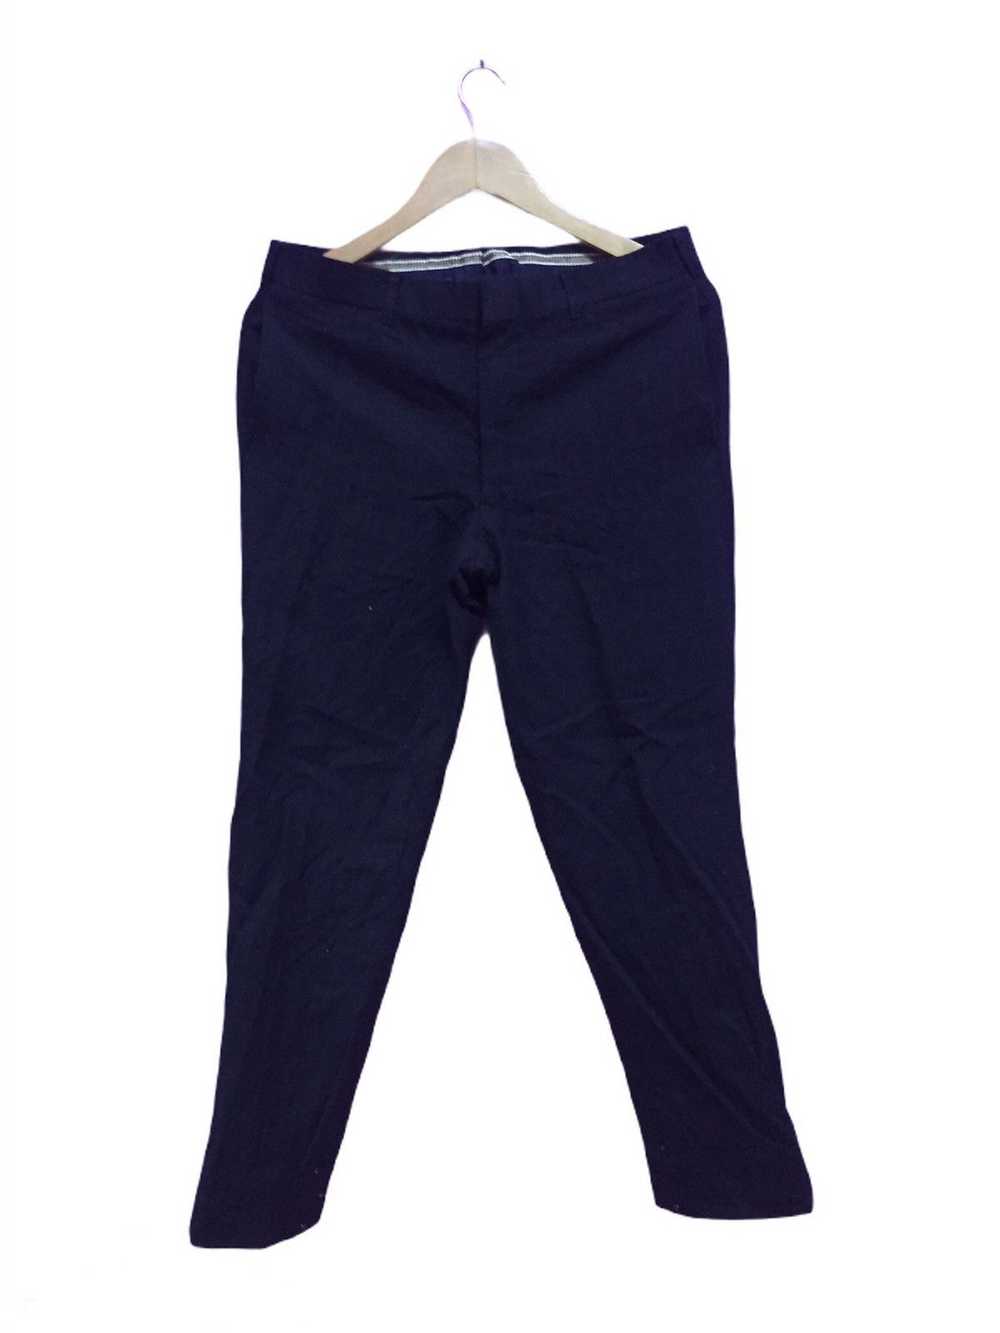 Japanese Brand Last Drop Van Jac Pants - image 1